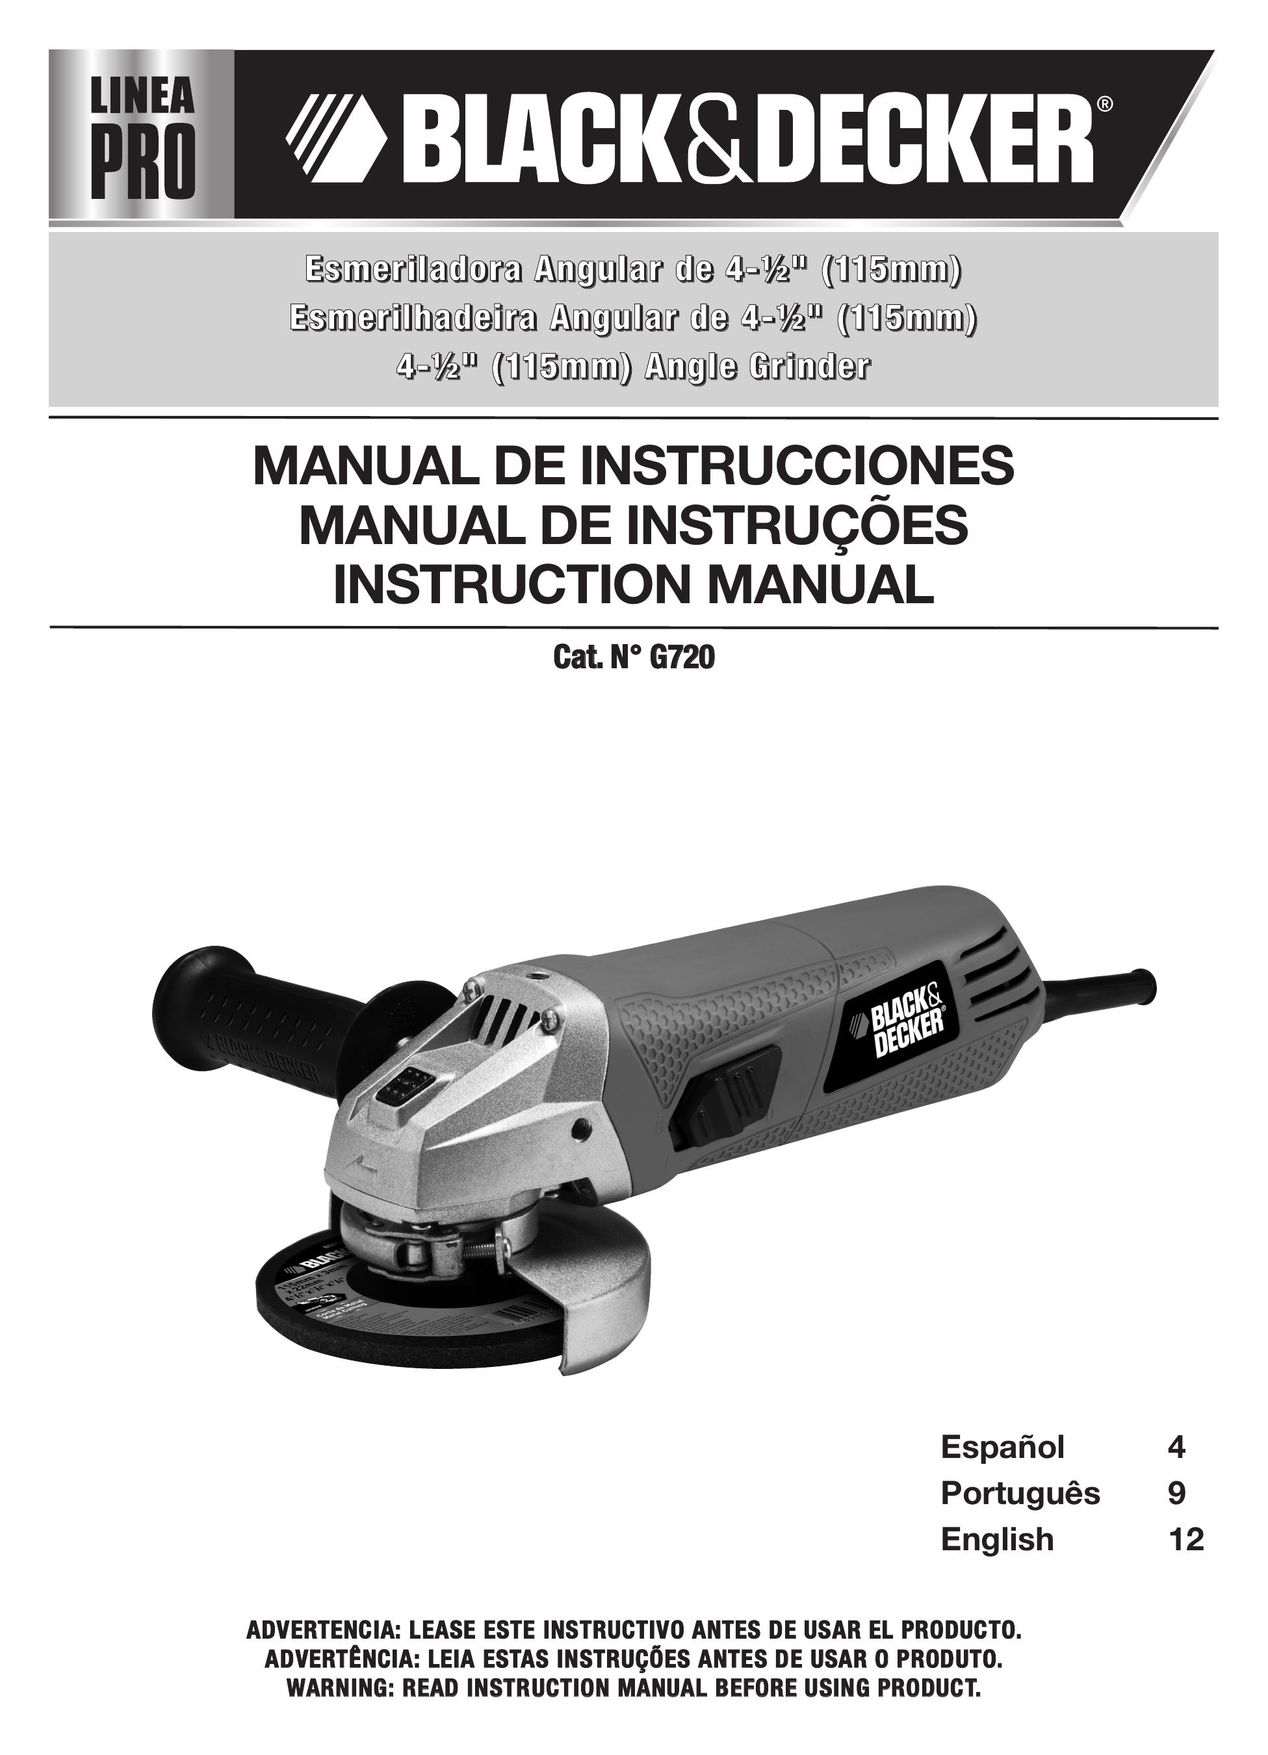 Black & Decker G720 Grinder User Manual